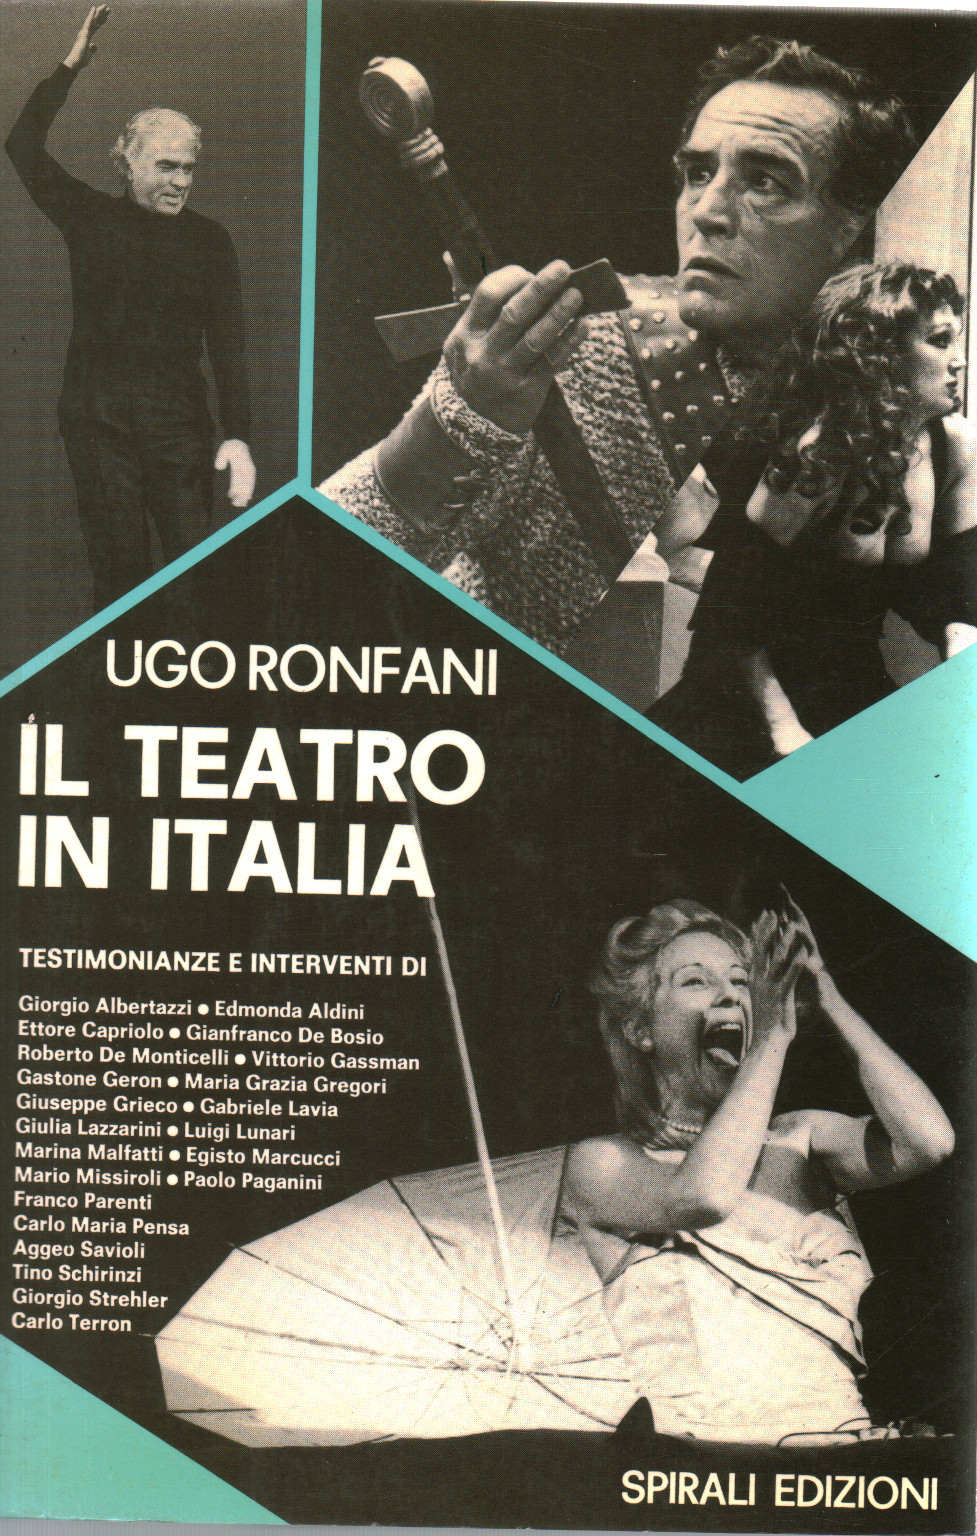 Le théâtre de l'Italie, de la.un.